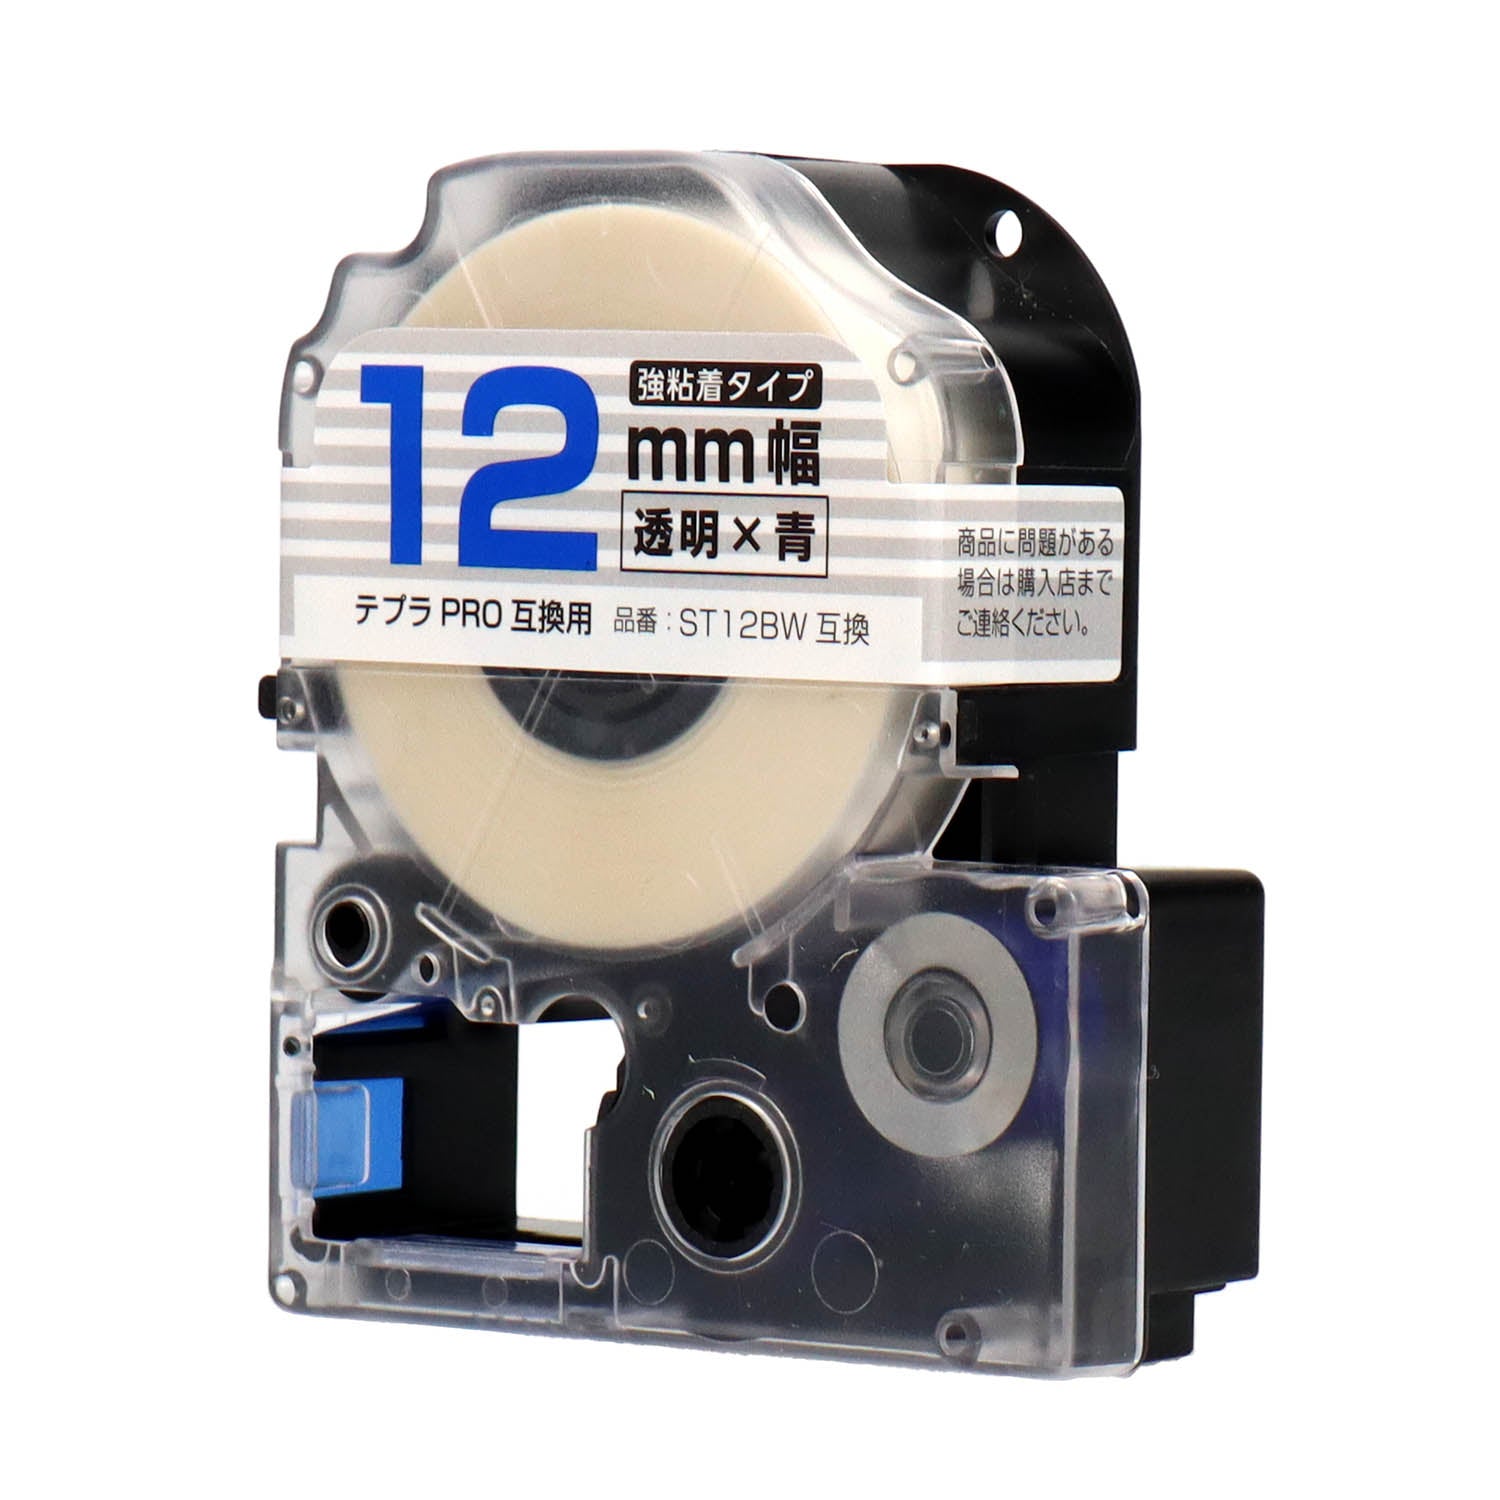 テプラPRO用互換テープカートリッジ 透明×青文字 12mm